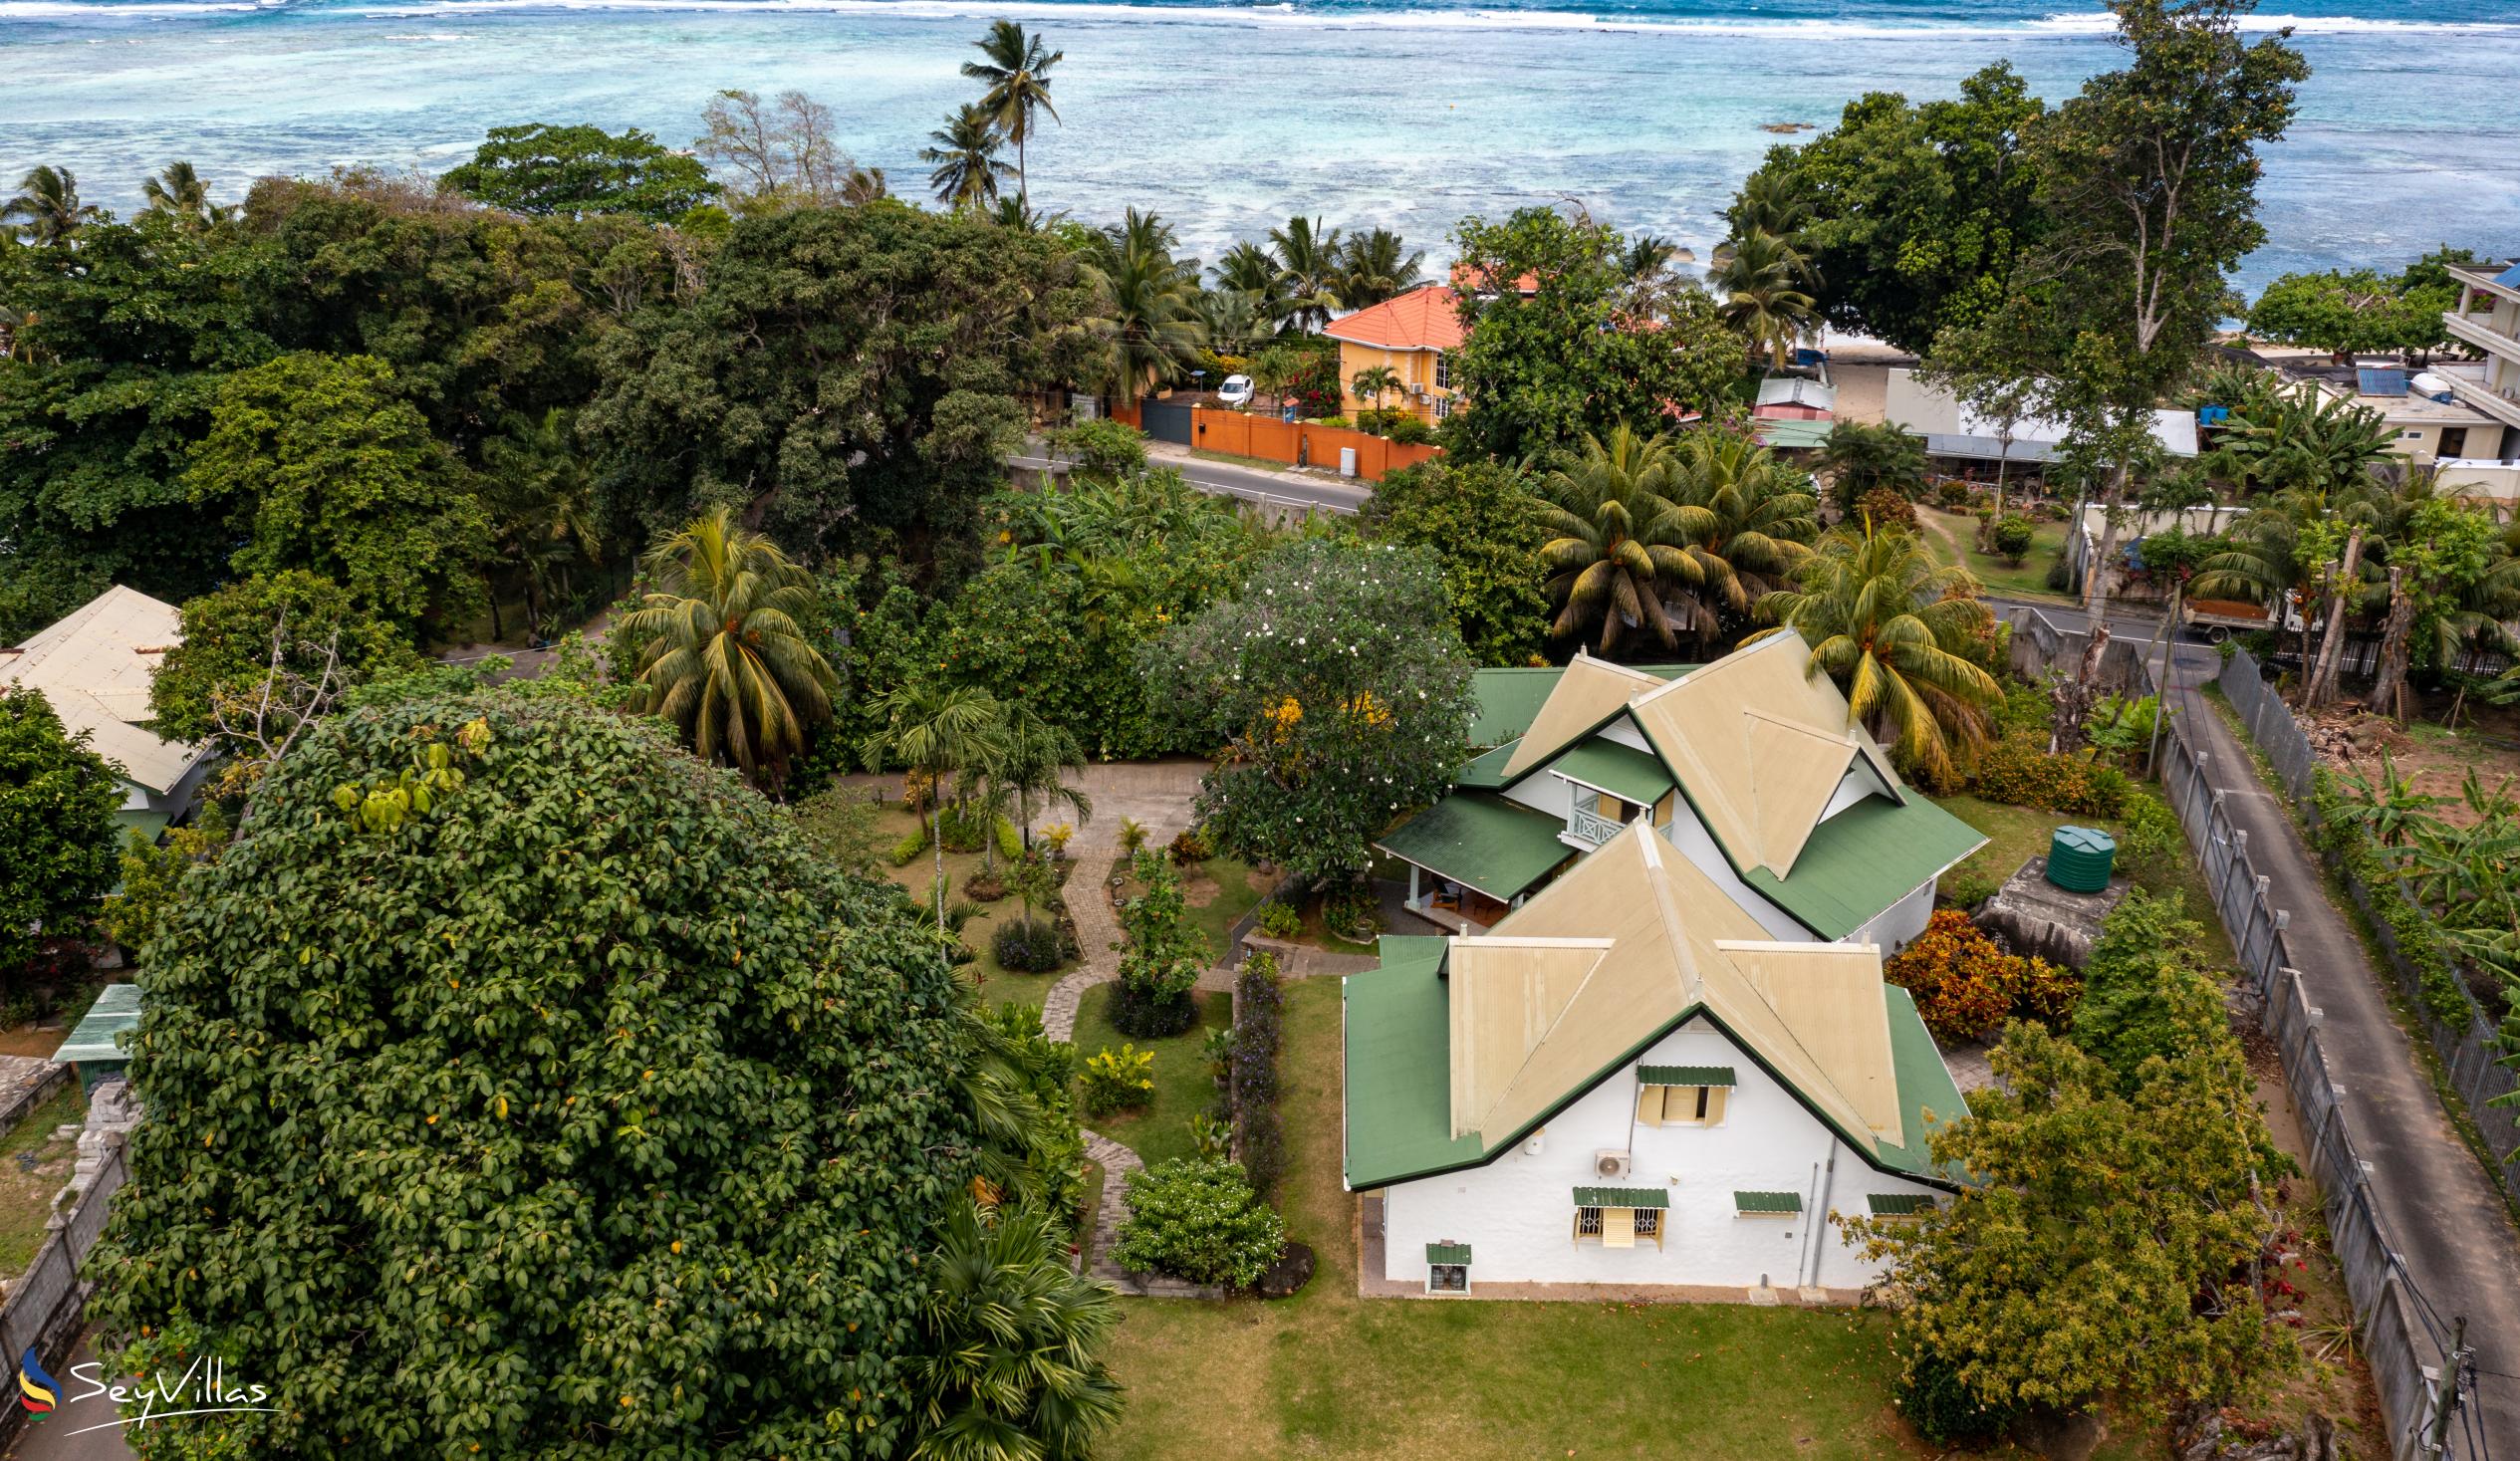 Foto 2: Villa Kordia - Esterno - Mahé (Seychelles)